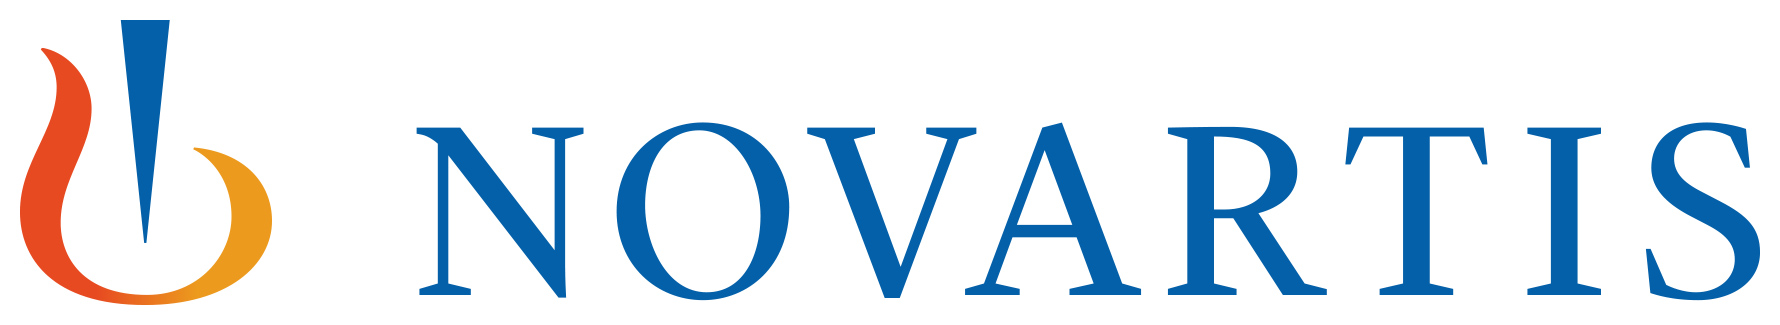 Novartis 2018